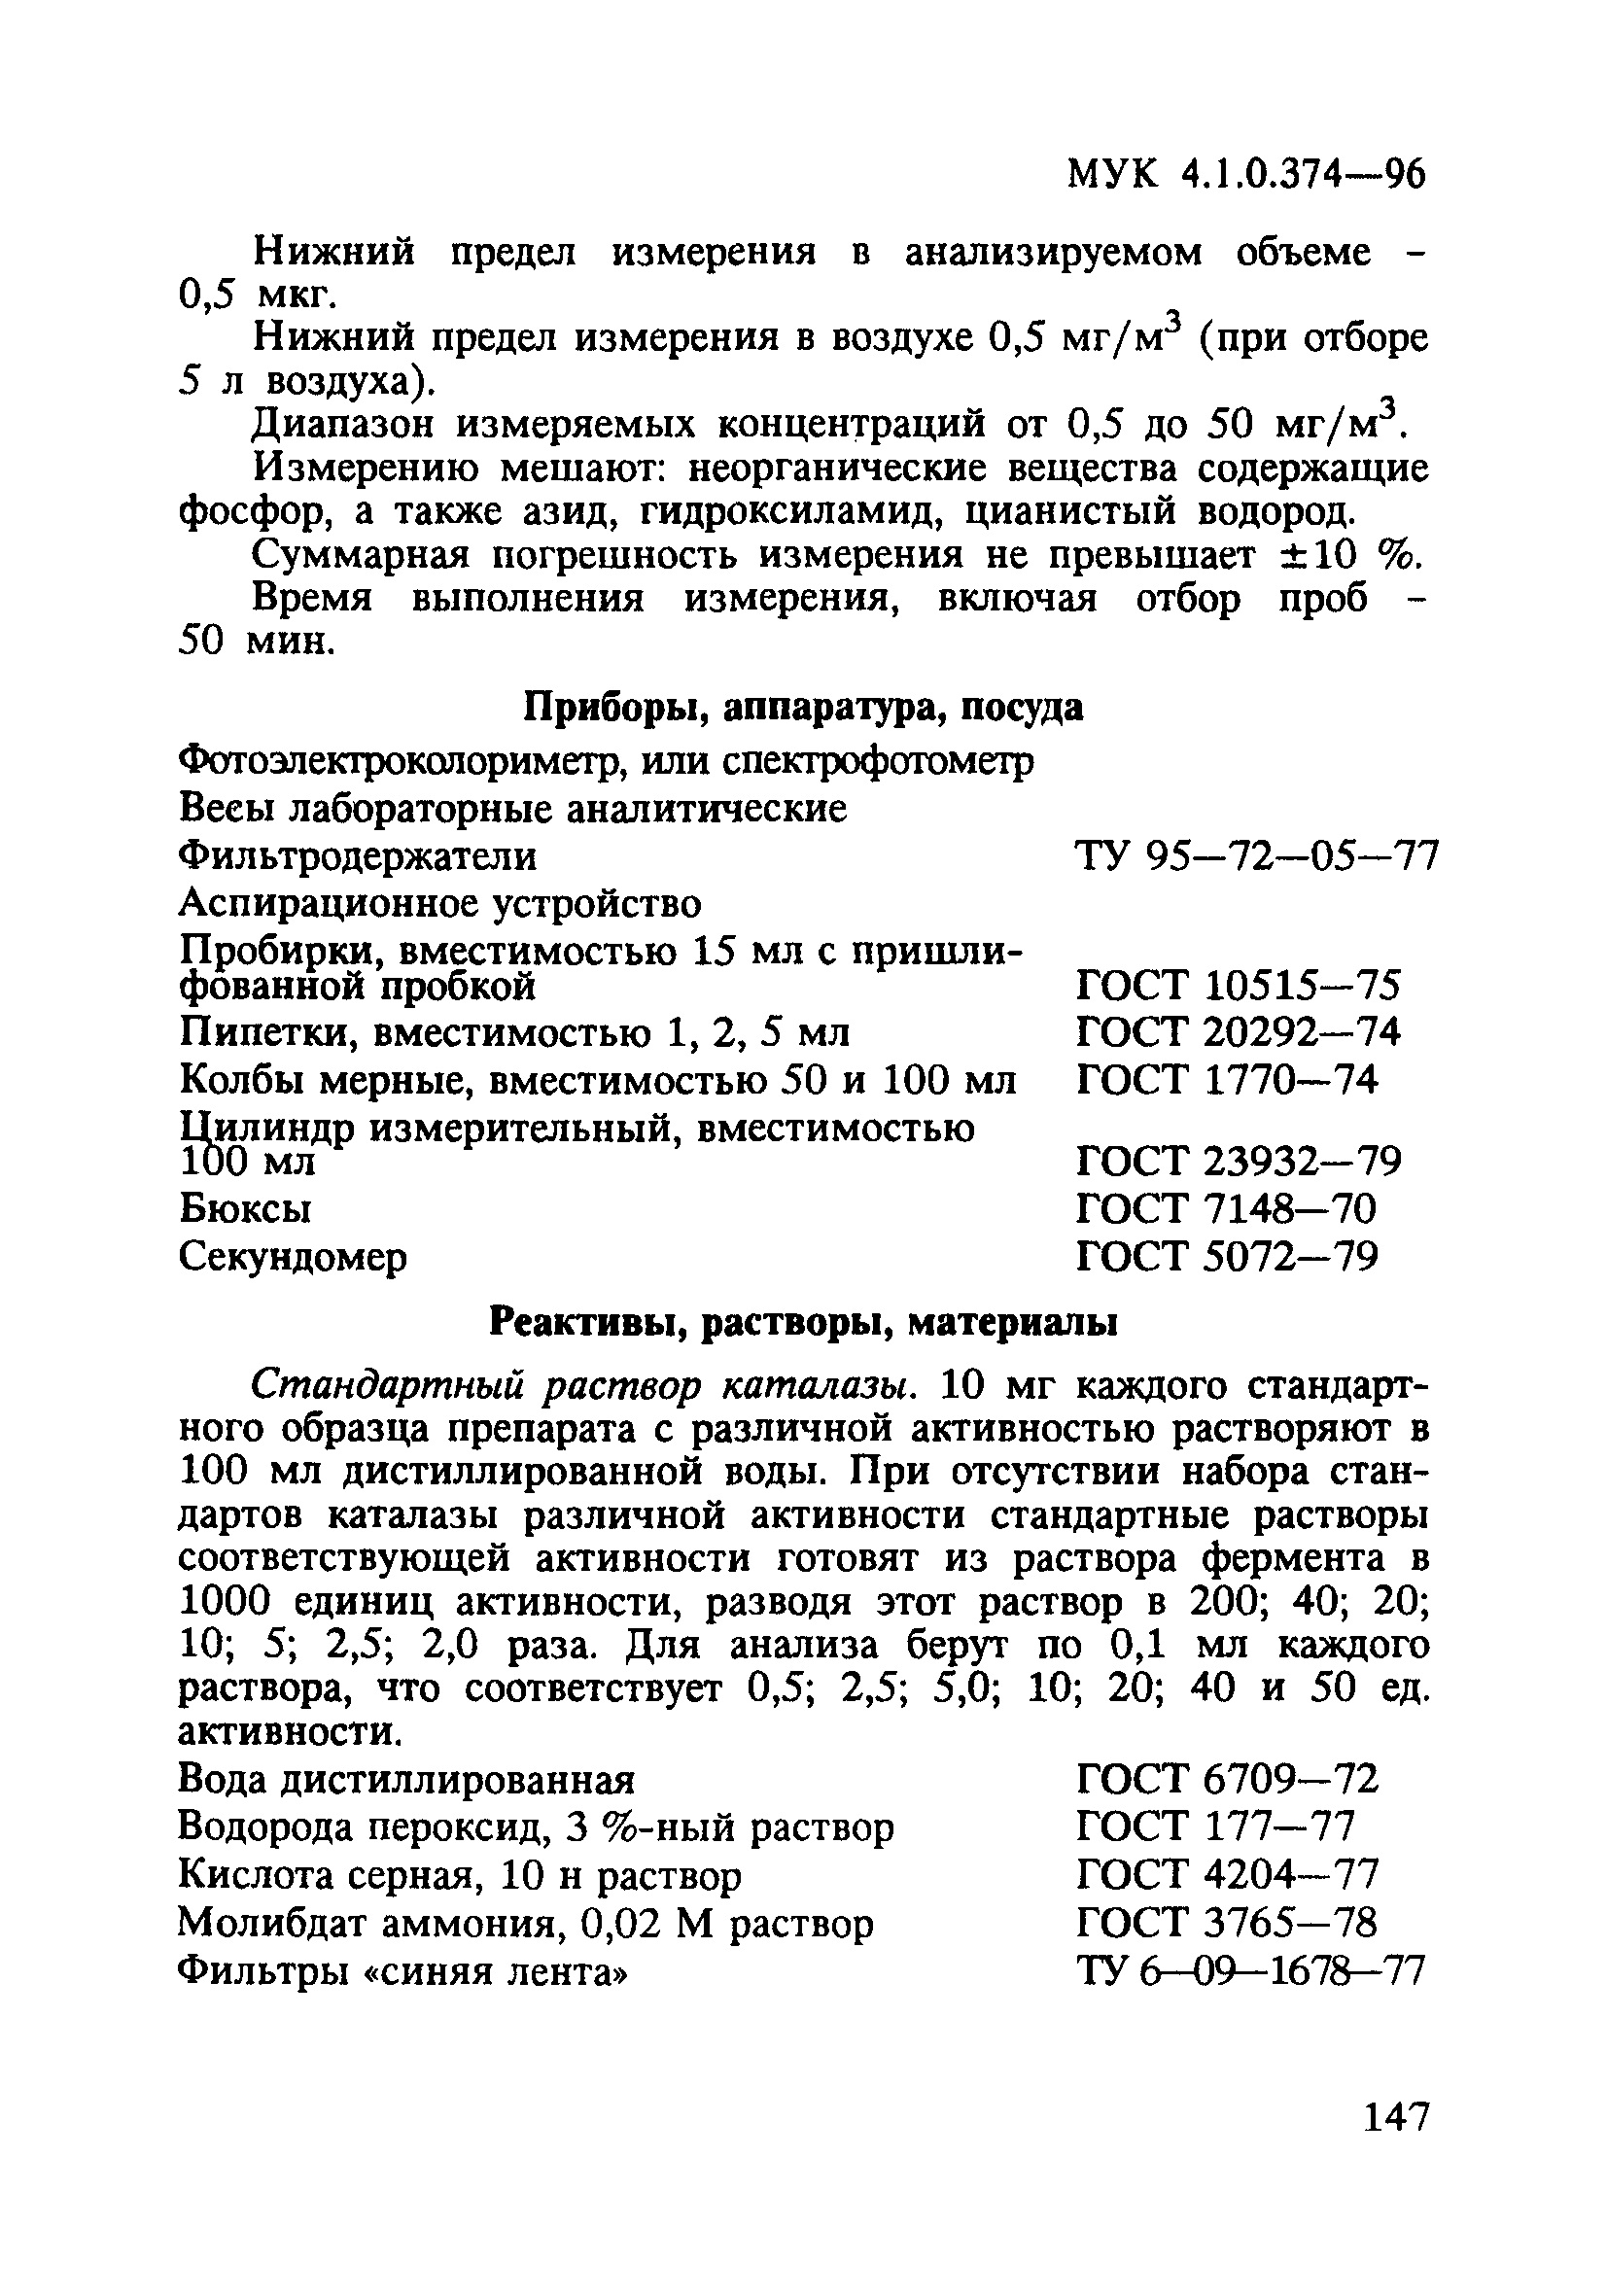 МУК 4.1.0.374-96